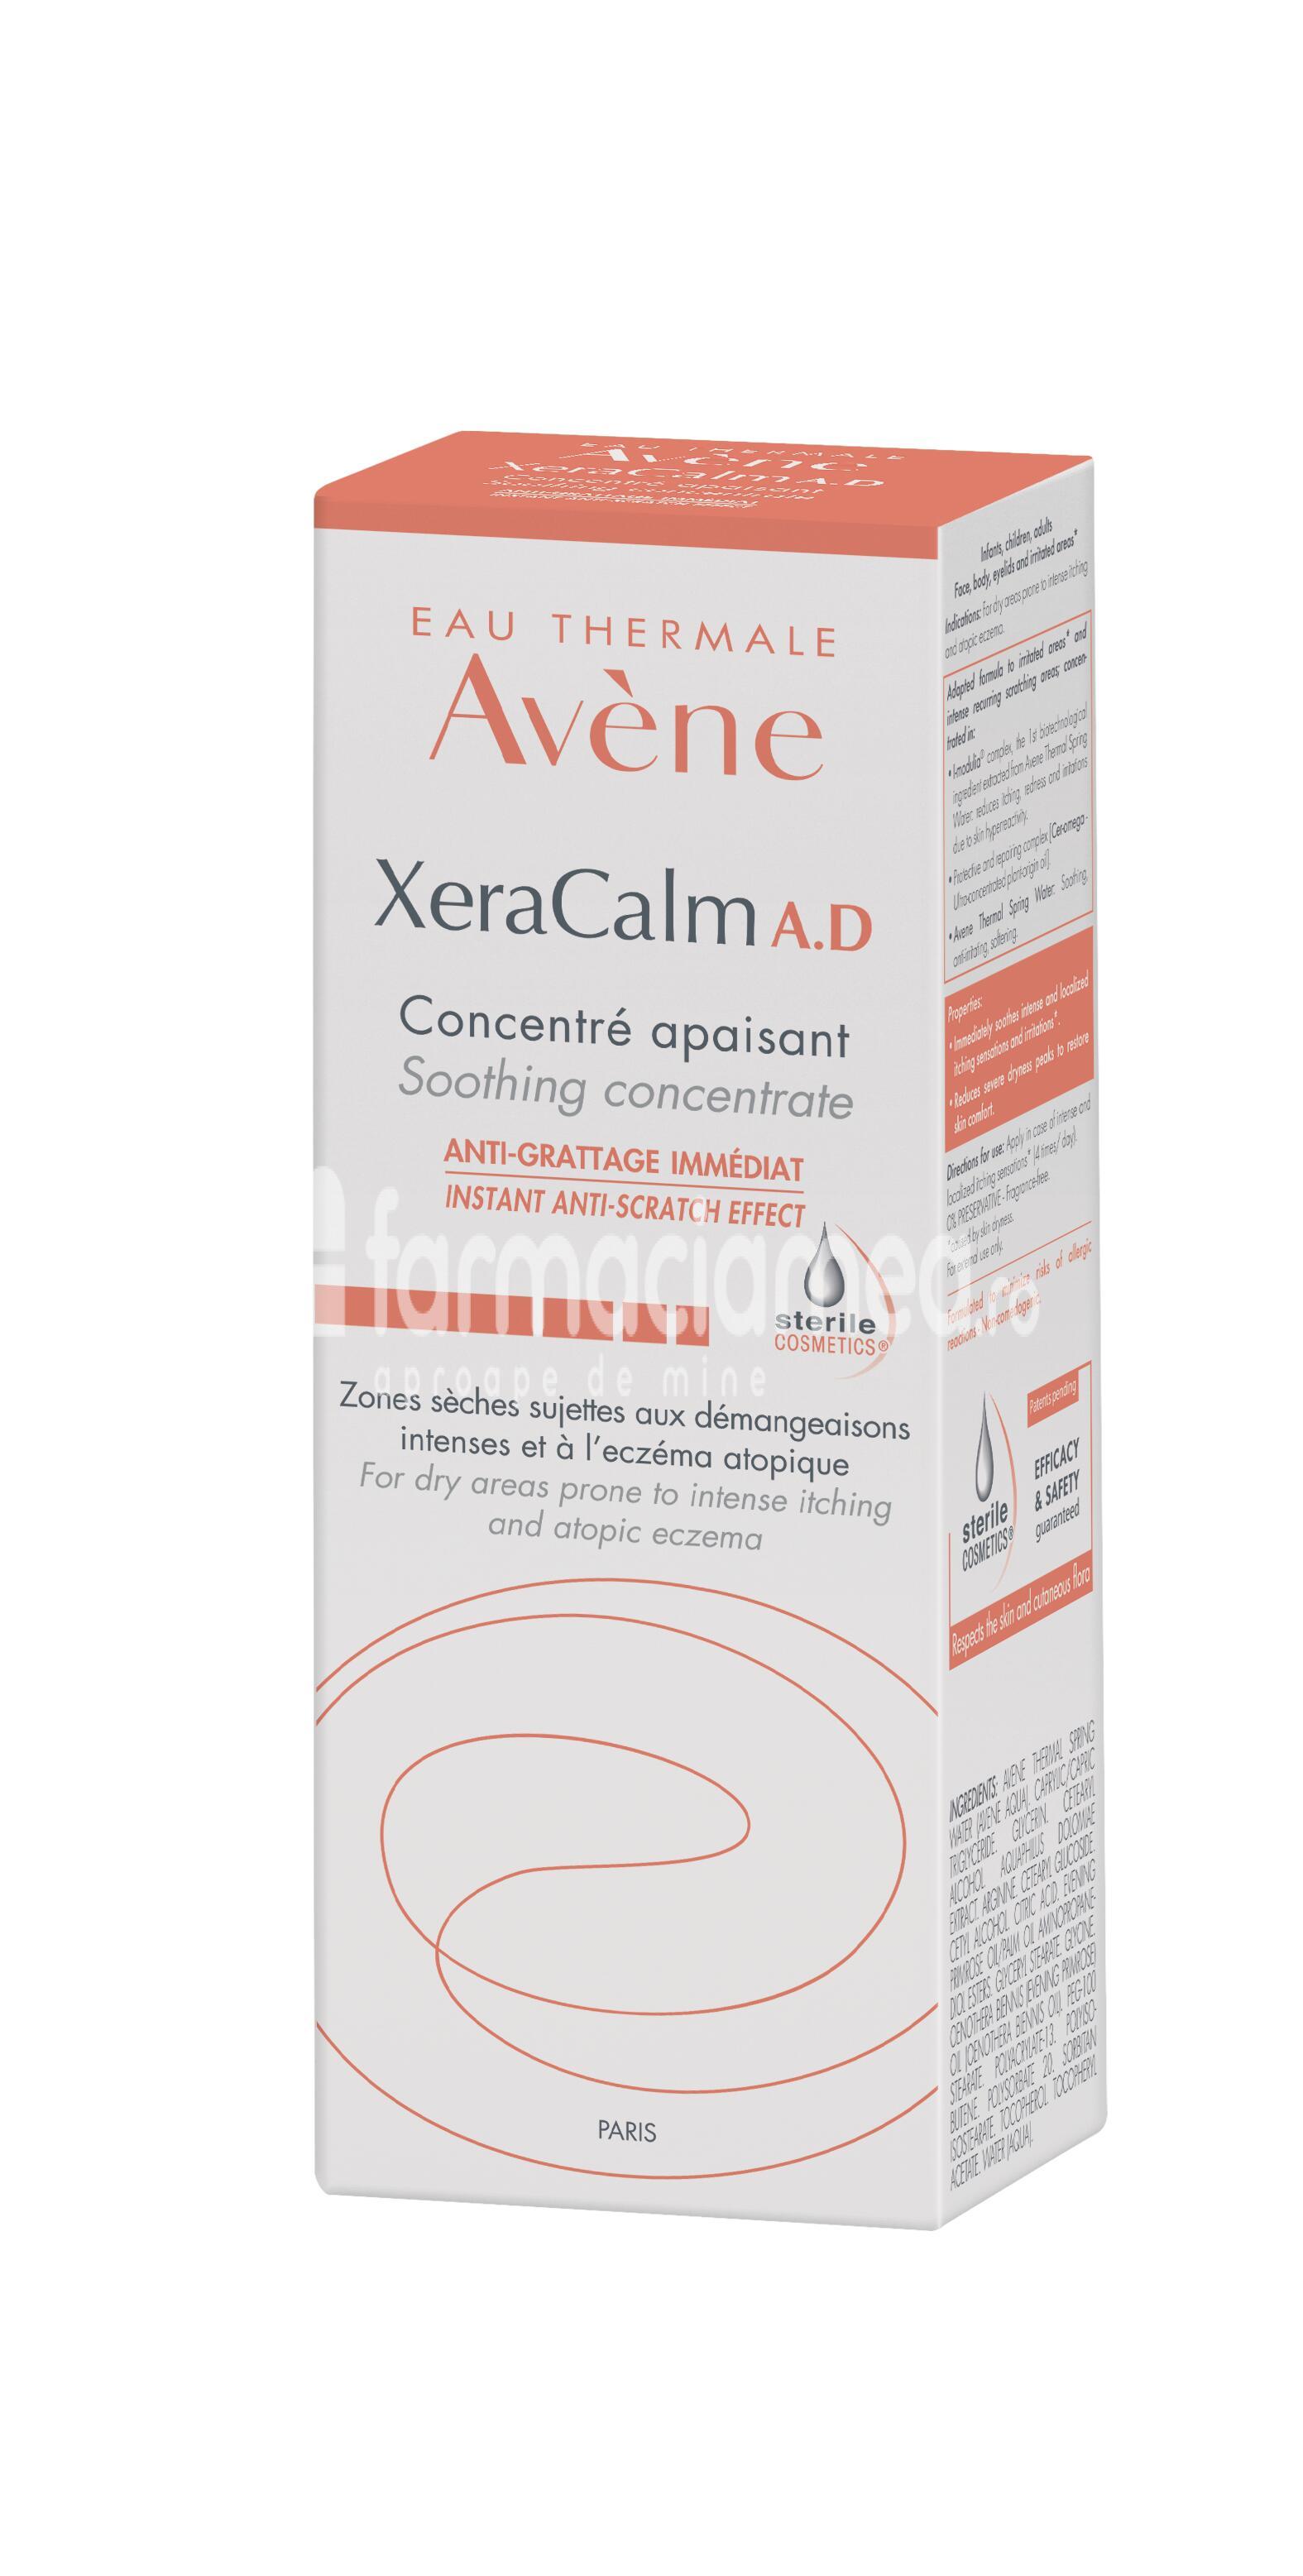 Îngrijire corp - Avene Xeracalm A.D Concentrat, 50ml, farmaciamea.ro